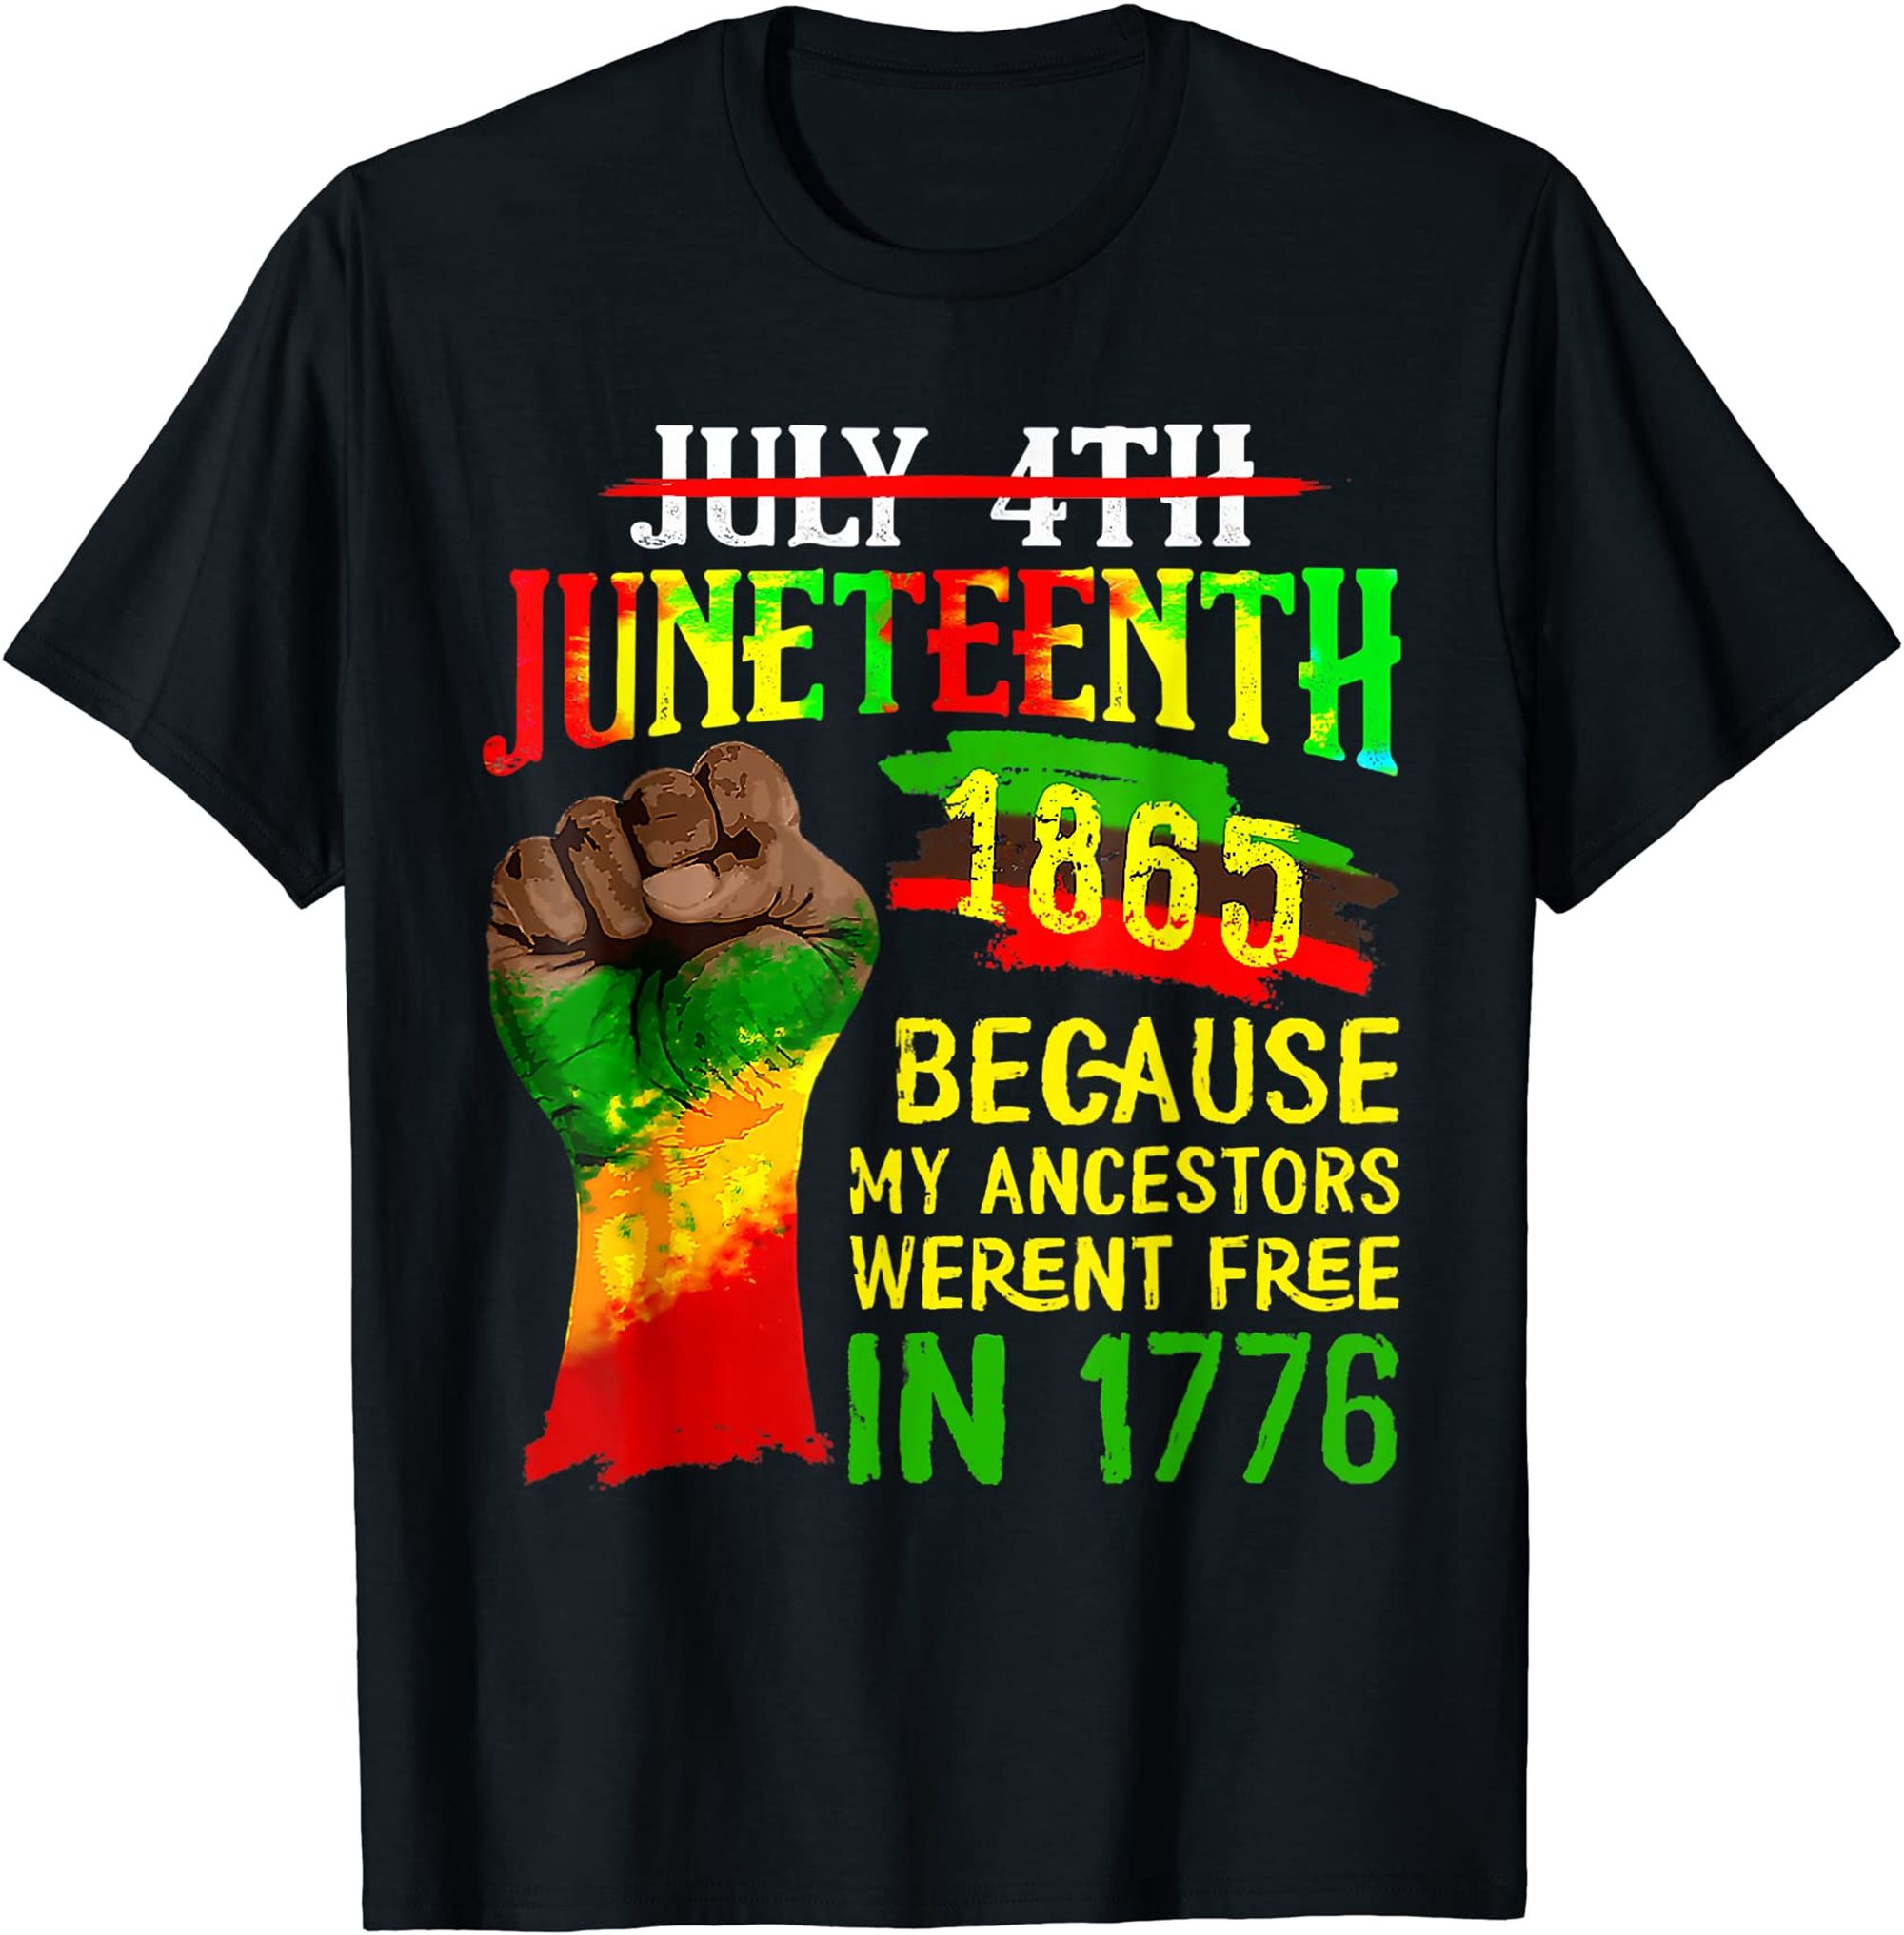 Juneteenth Tshirt Women Juneteenth Shirts For Men Juneteenth T-shirt Size Up To 5xl